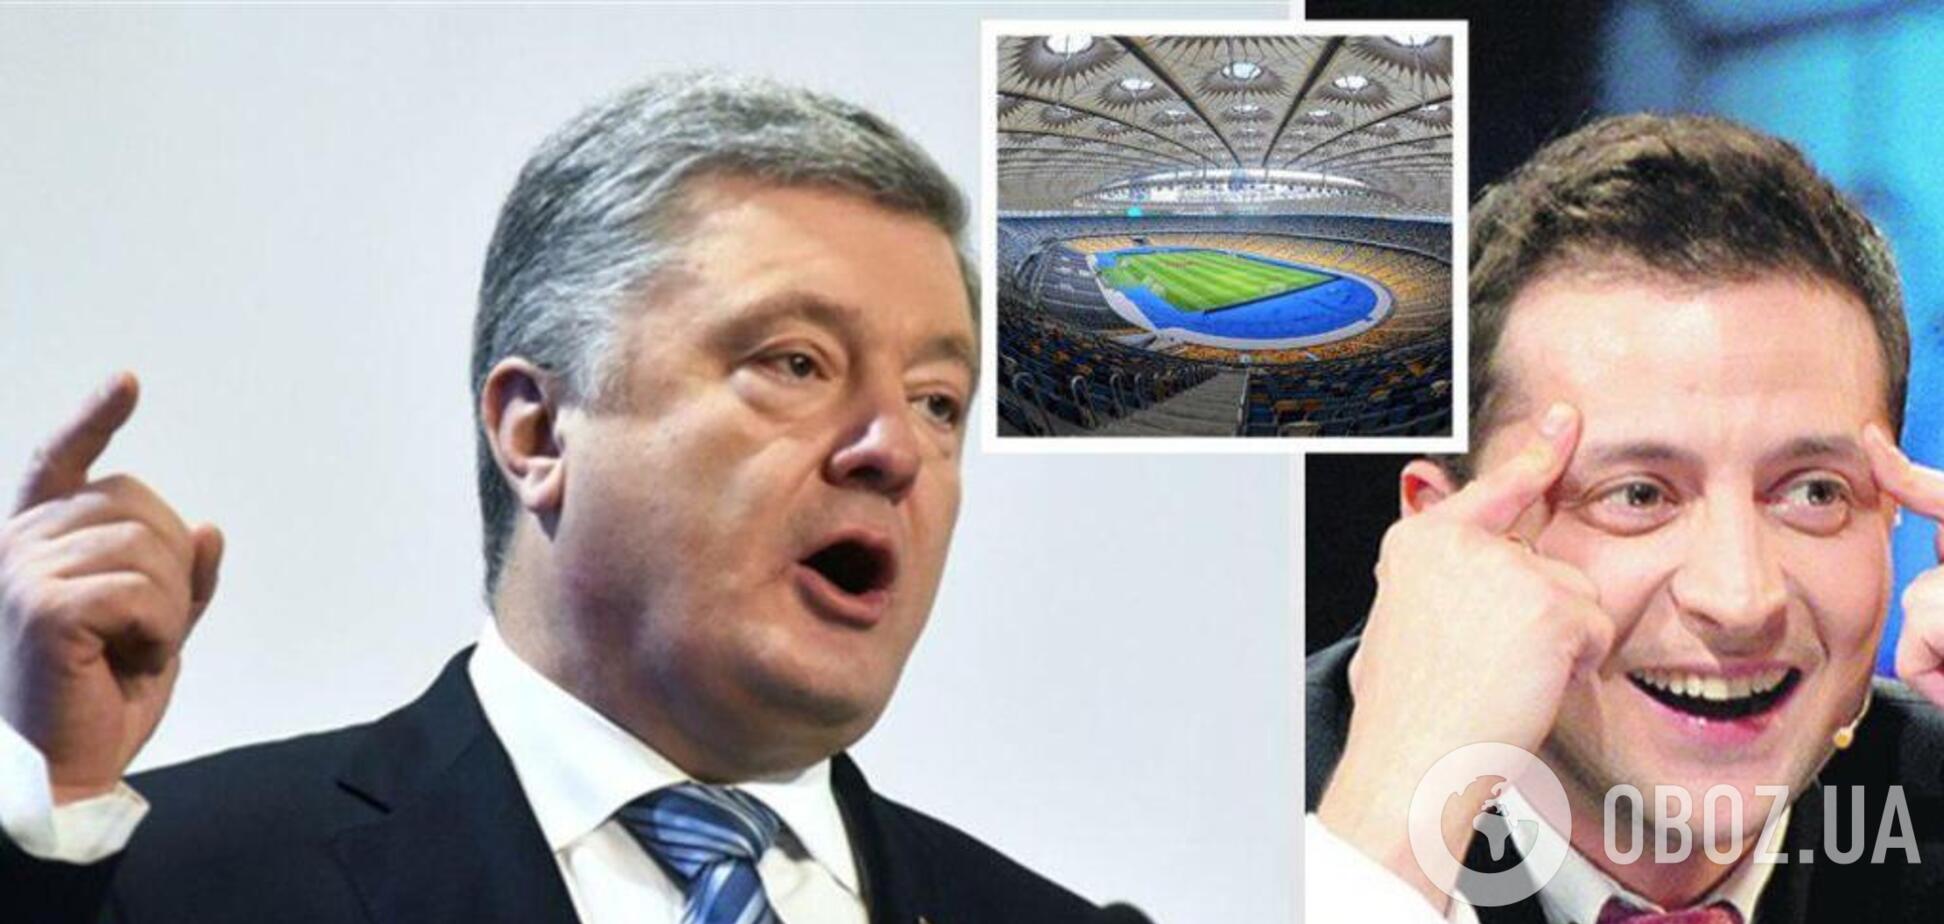 Дебаты Порошенко и Зеленского: украинцы 'обвалили' сайт с билетами на 'Олимпийский'